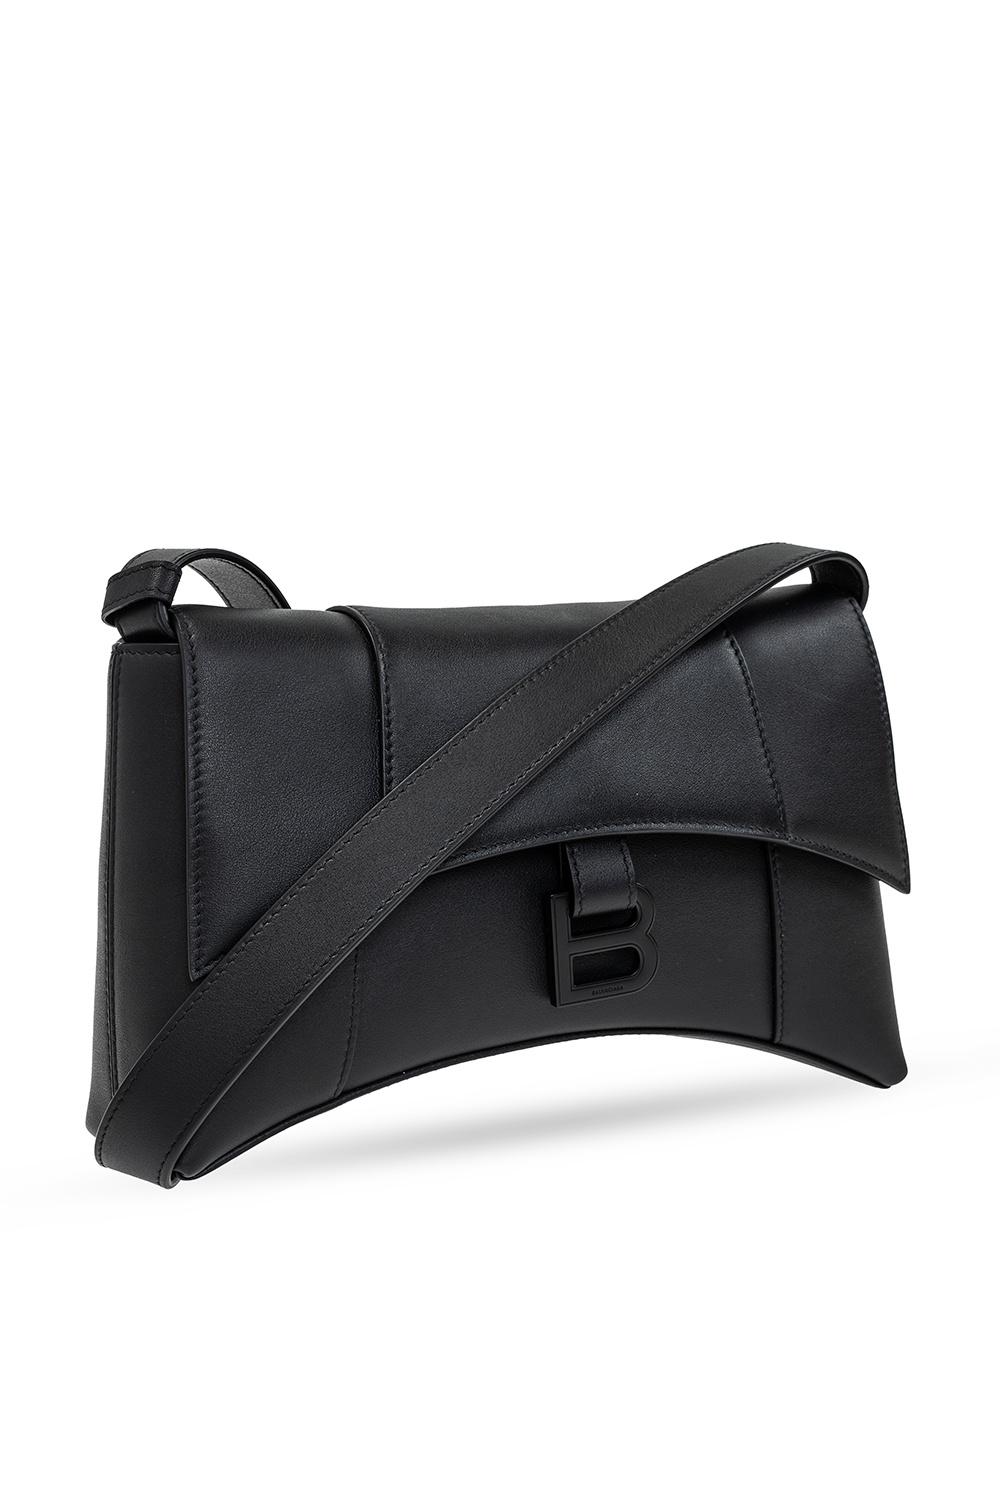 Grey 'Neo Cagole Small' shoulder bag Balenciaga - Vitkac HK